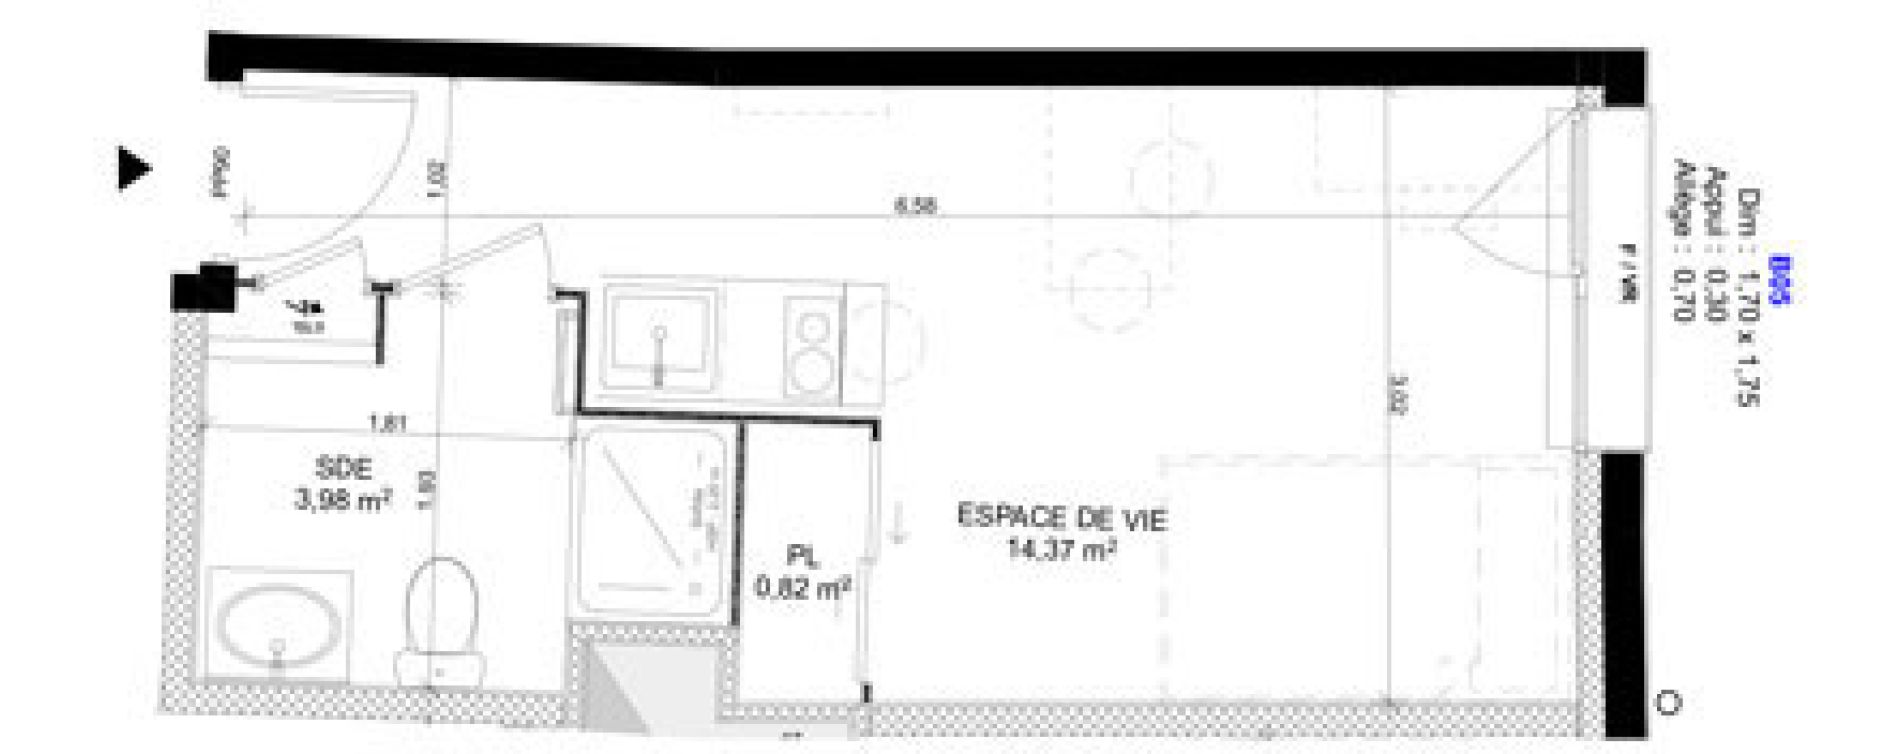 Appartement T1 meubl&eacute; de 19,17 m2 au Havre Sainte marie - saint leon